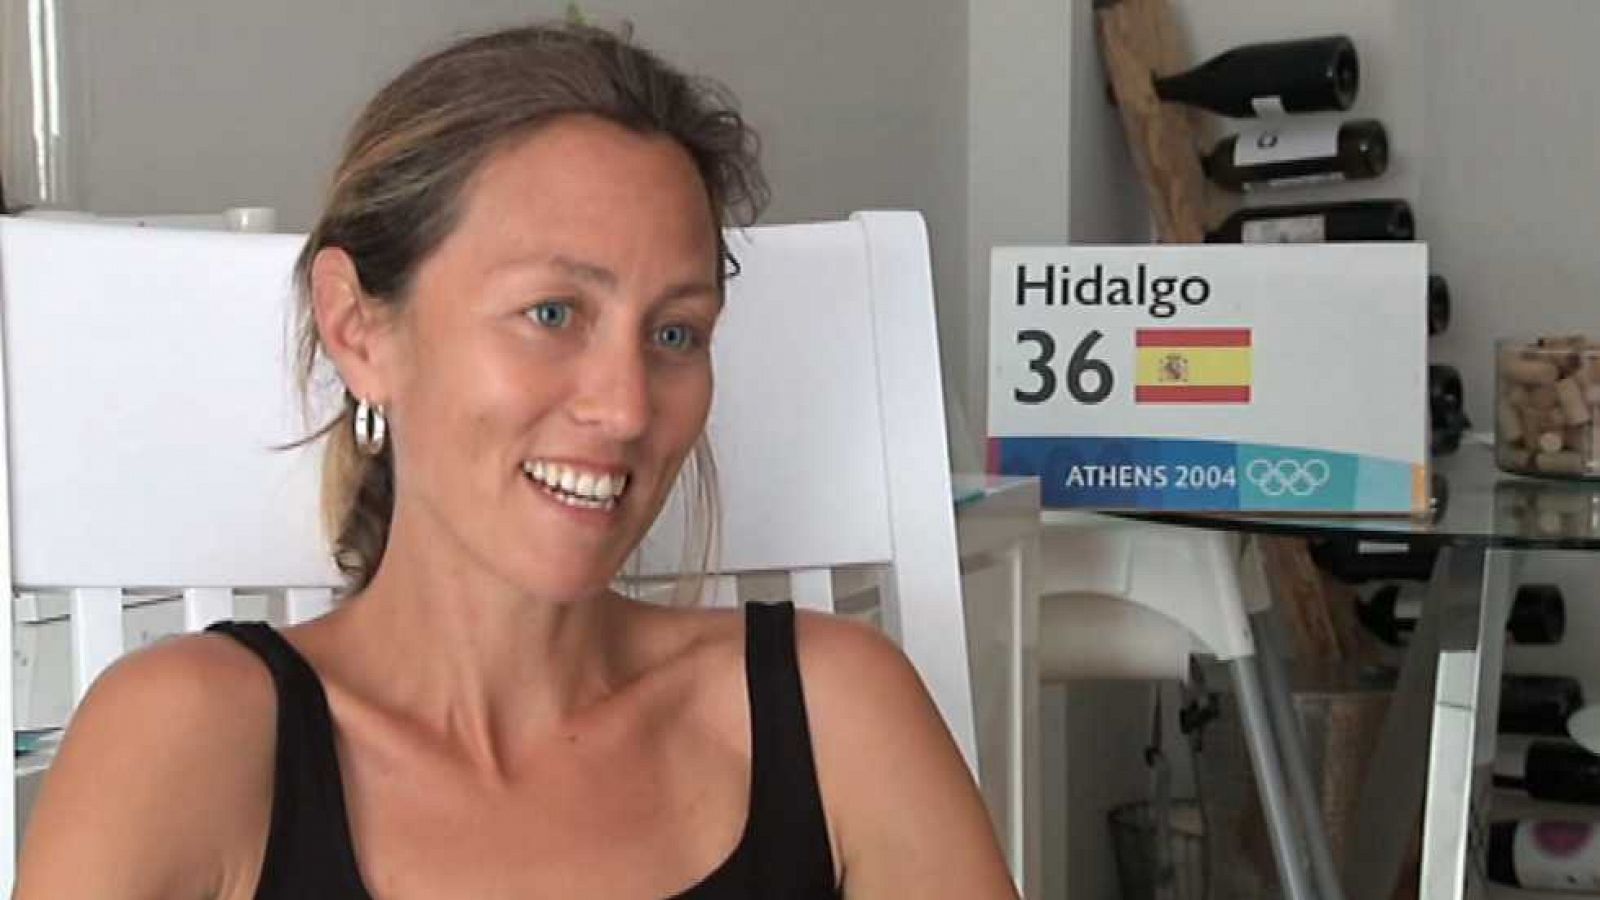 Mujer y deporte - Triatleta: Pilar Hidalgo